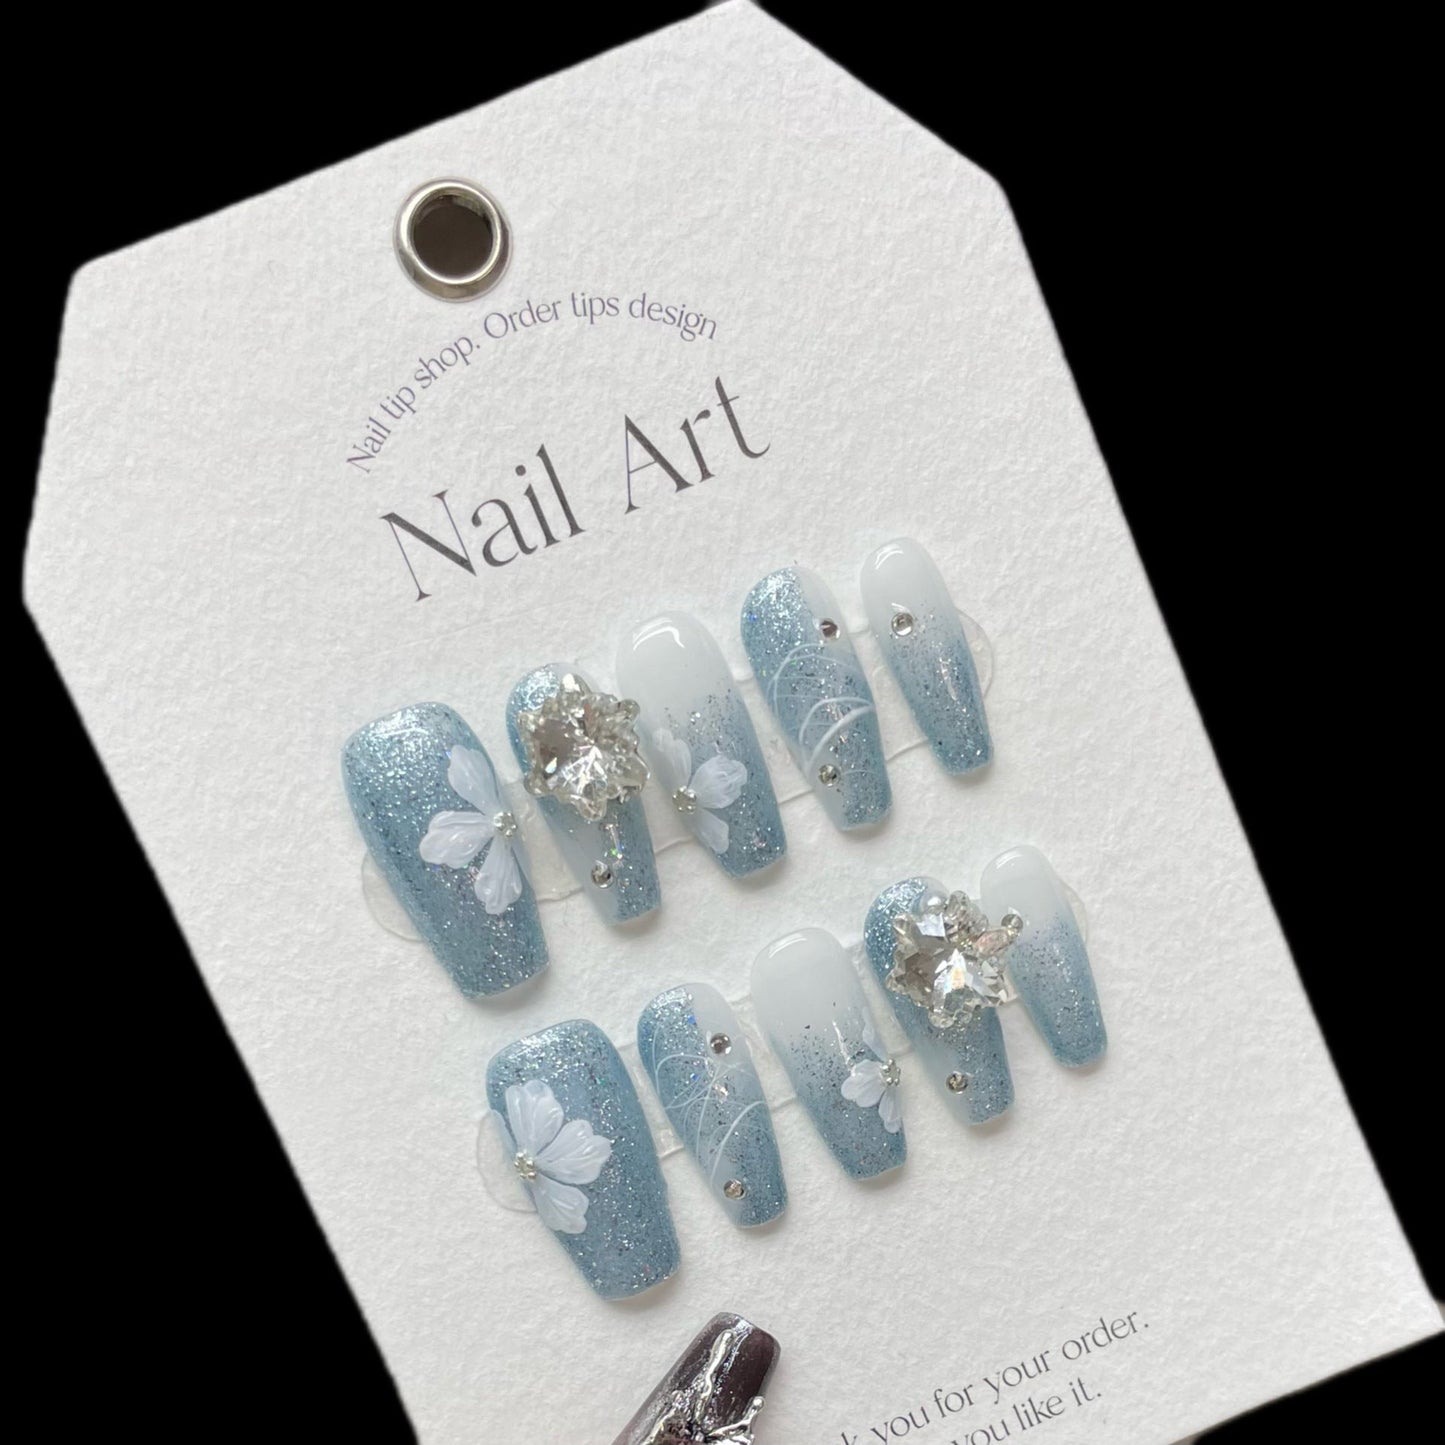 1072 Bloemenstijl press-on-nagels 100% handgemaakte kunstnagels zilverblauw